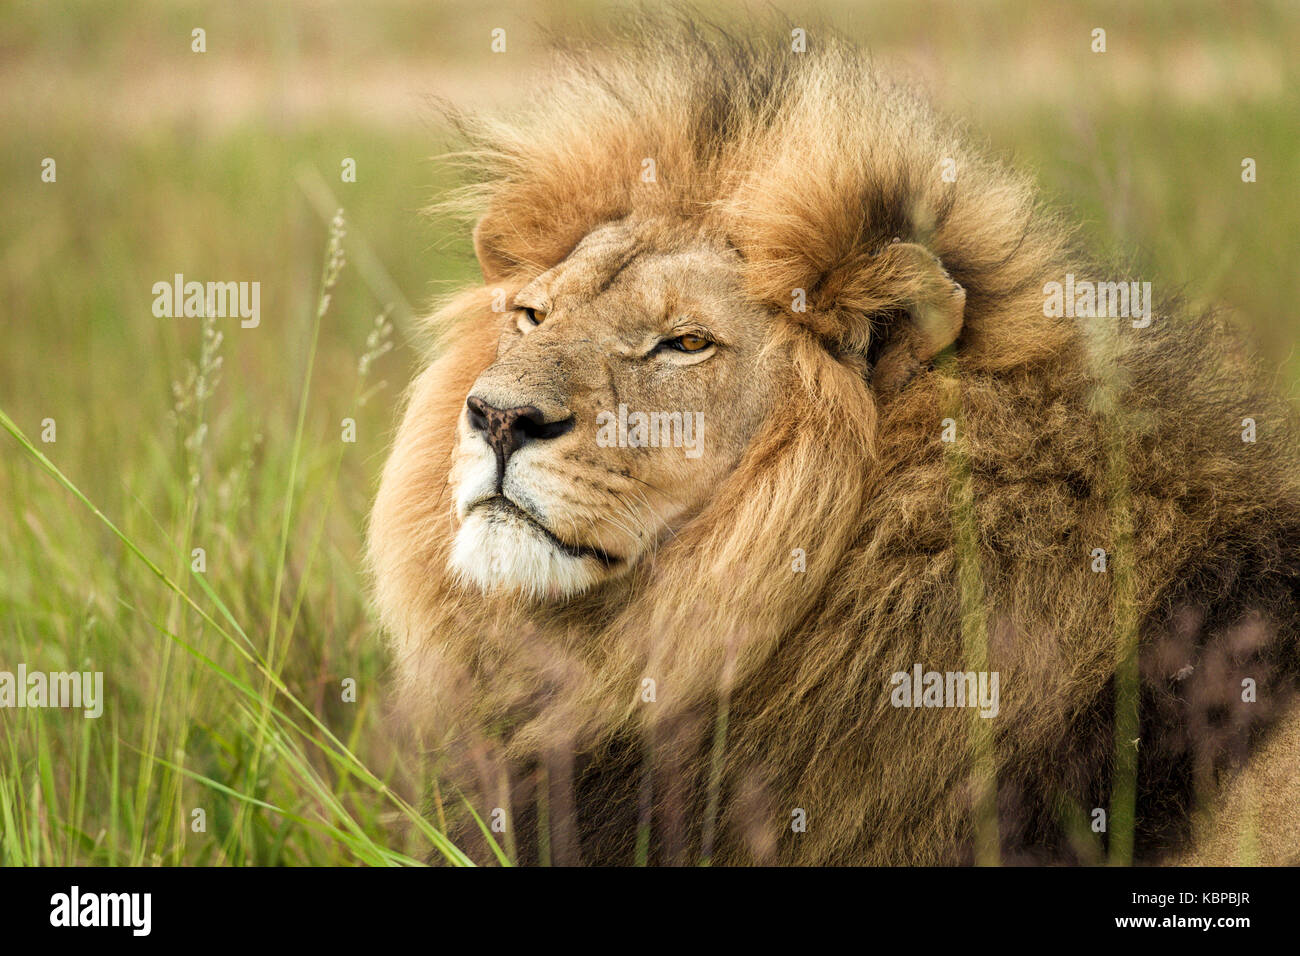 magnifique lion mâle (panthera leo) avec une énorme mane dans l'herbe, regardant les plaines avec intention Banque D'Images